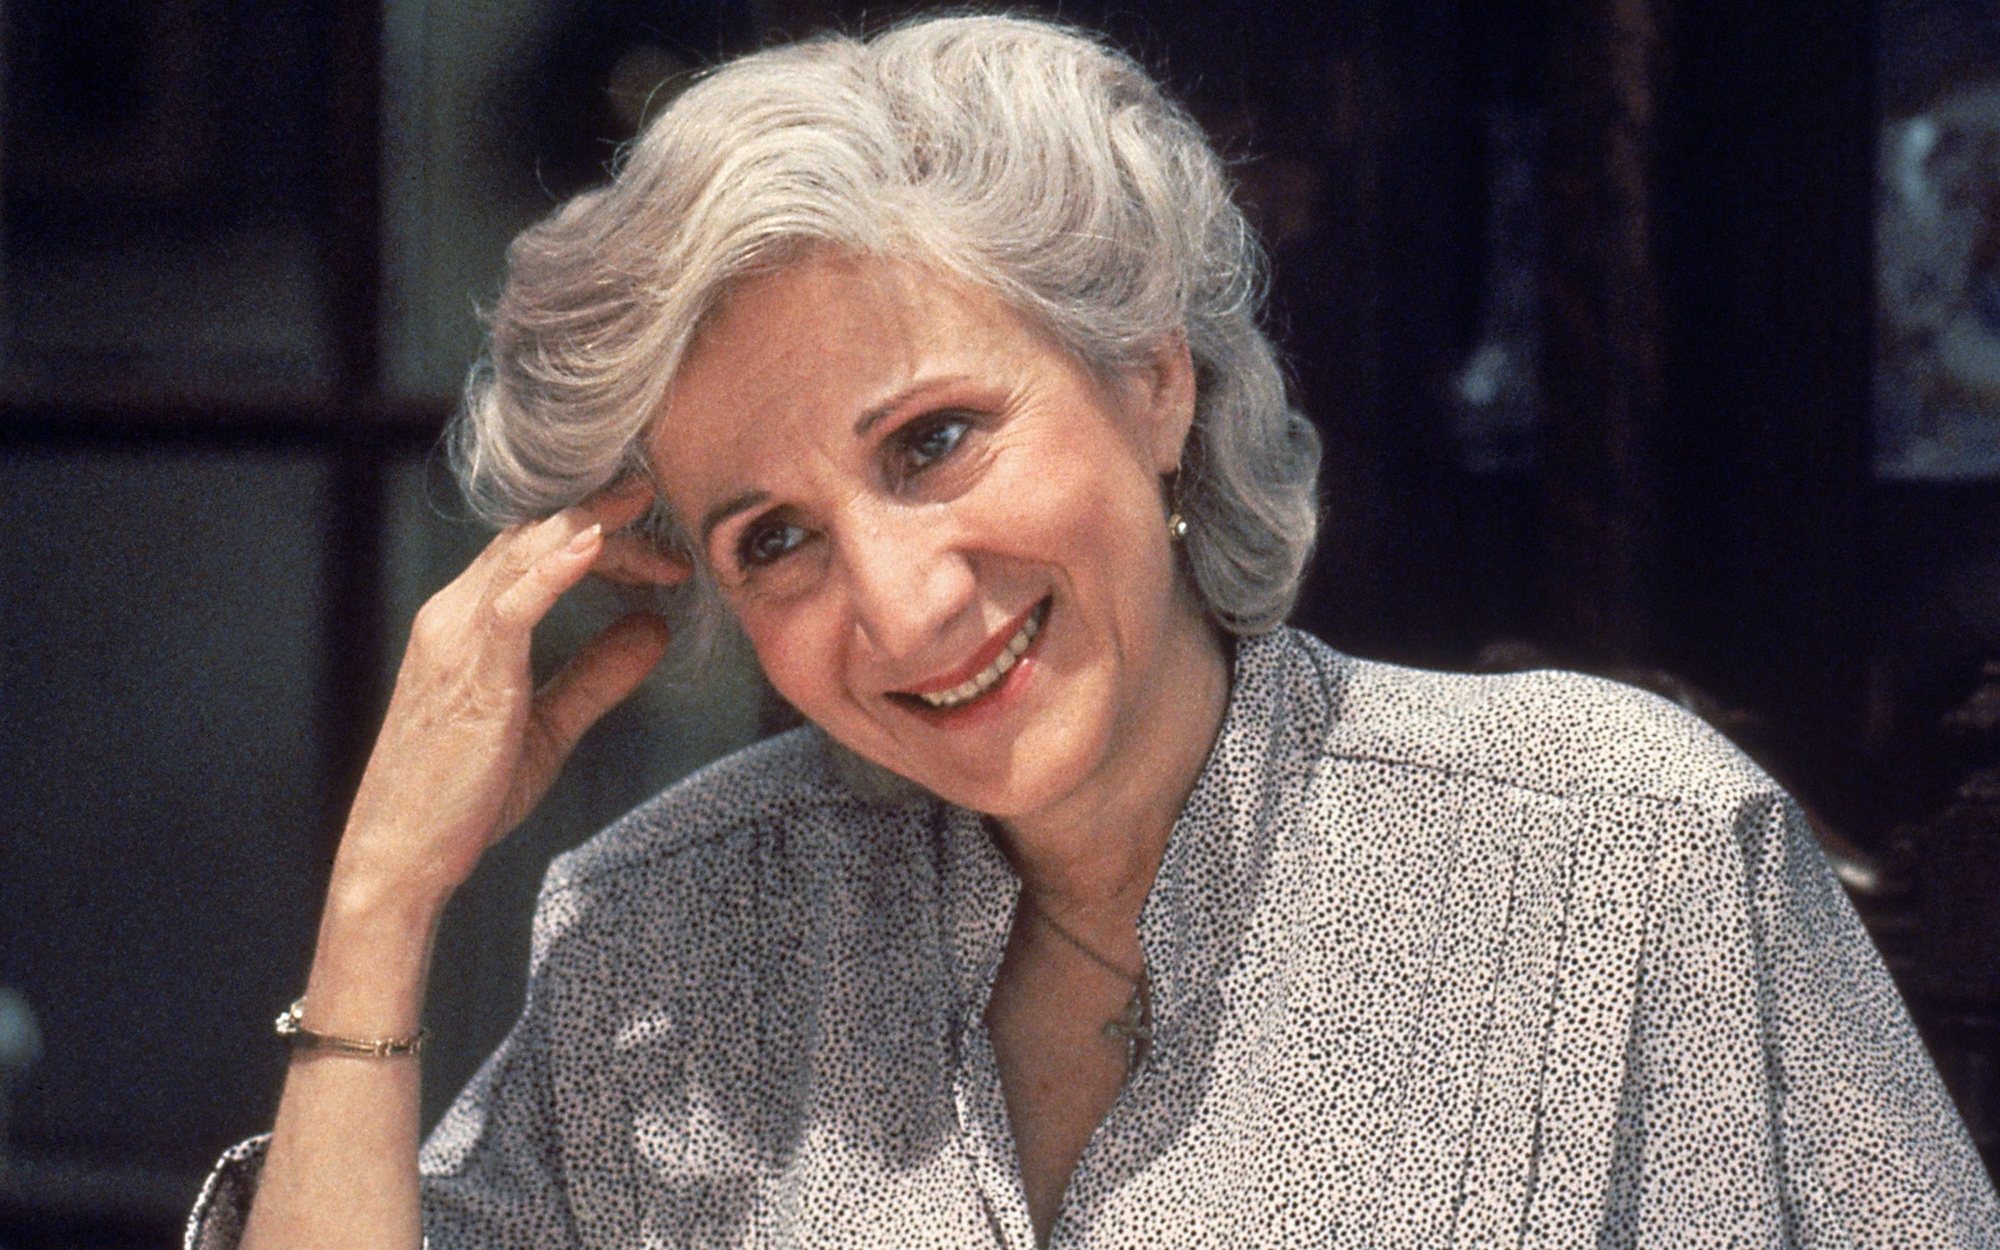 Muere Olympia Dukakis, actriz ganadora de un Oscar por "Hechizo de luna", a los 89 años